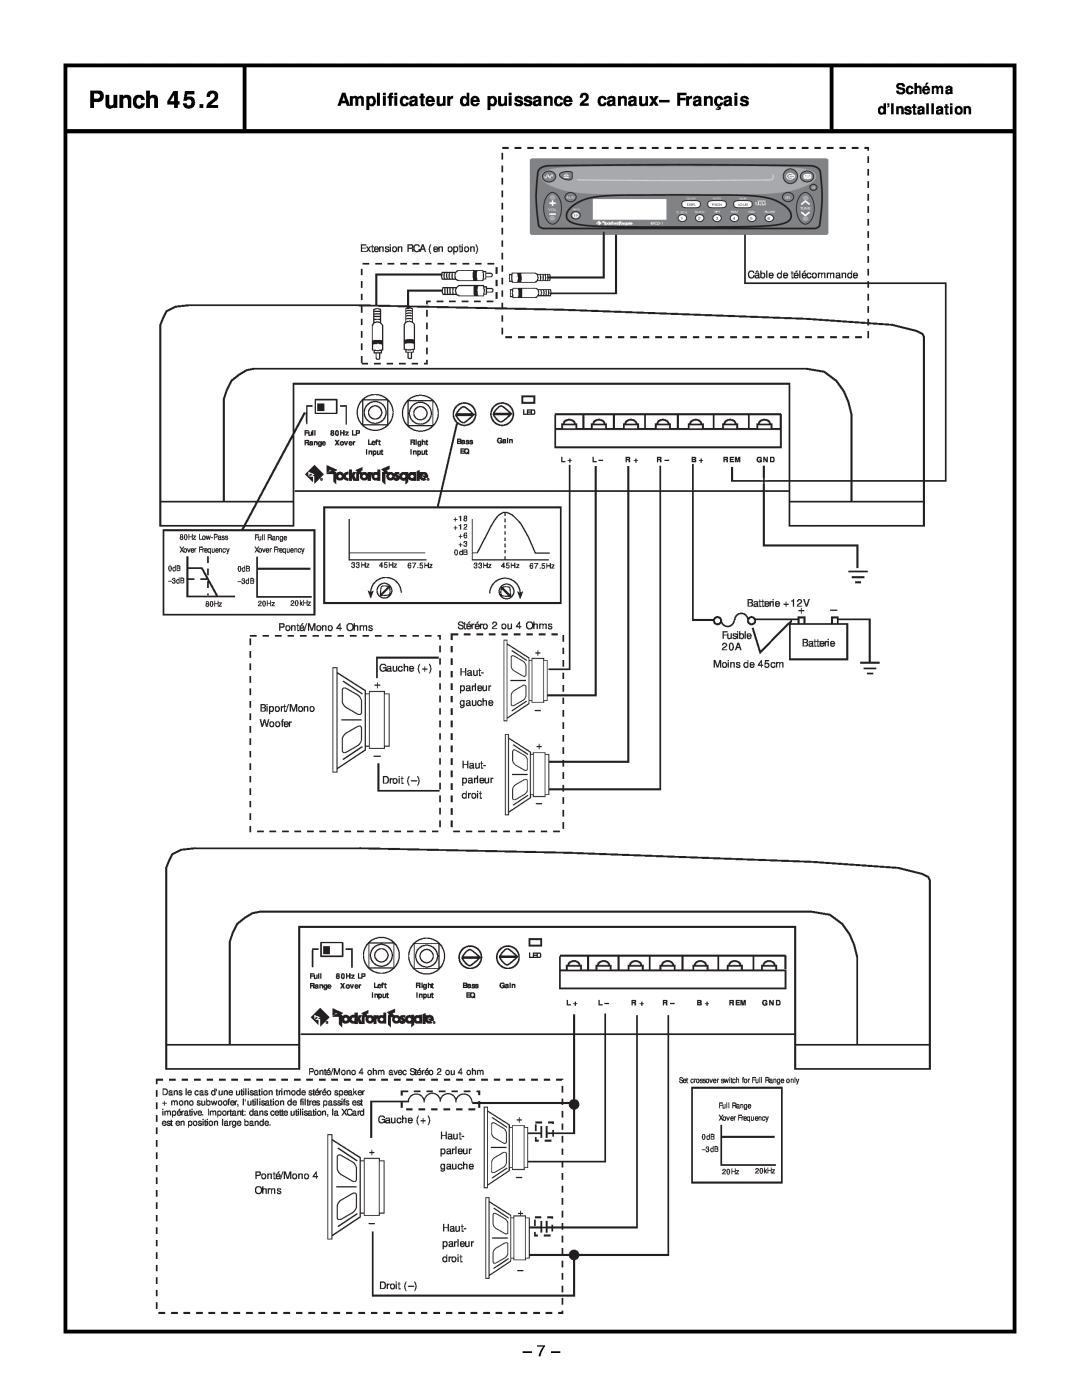 Rockford Fosgate 45.2 manual Amplificateur de puissance 2 canaux– Français, Punch, Schéma d’Installation 